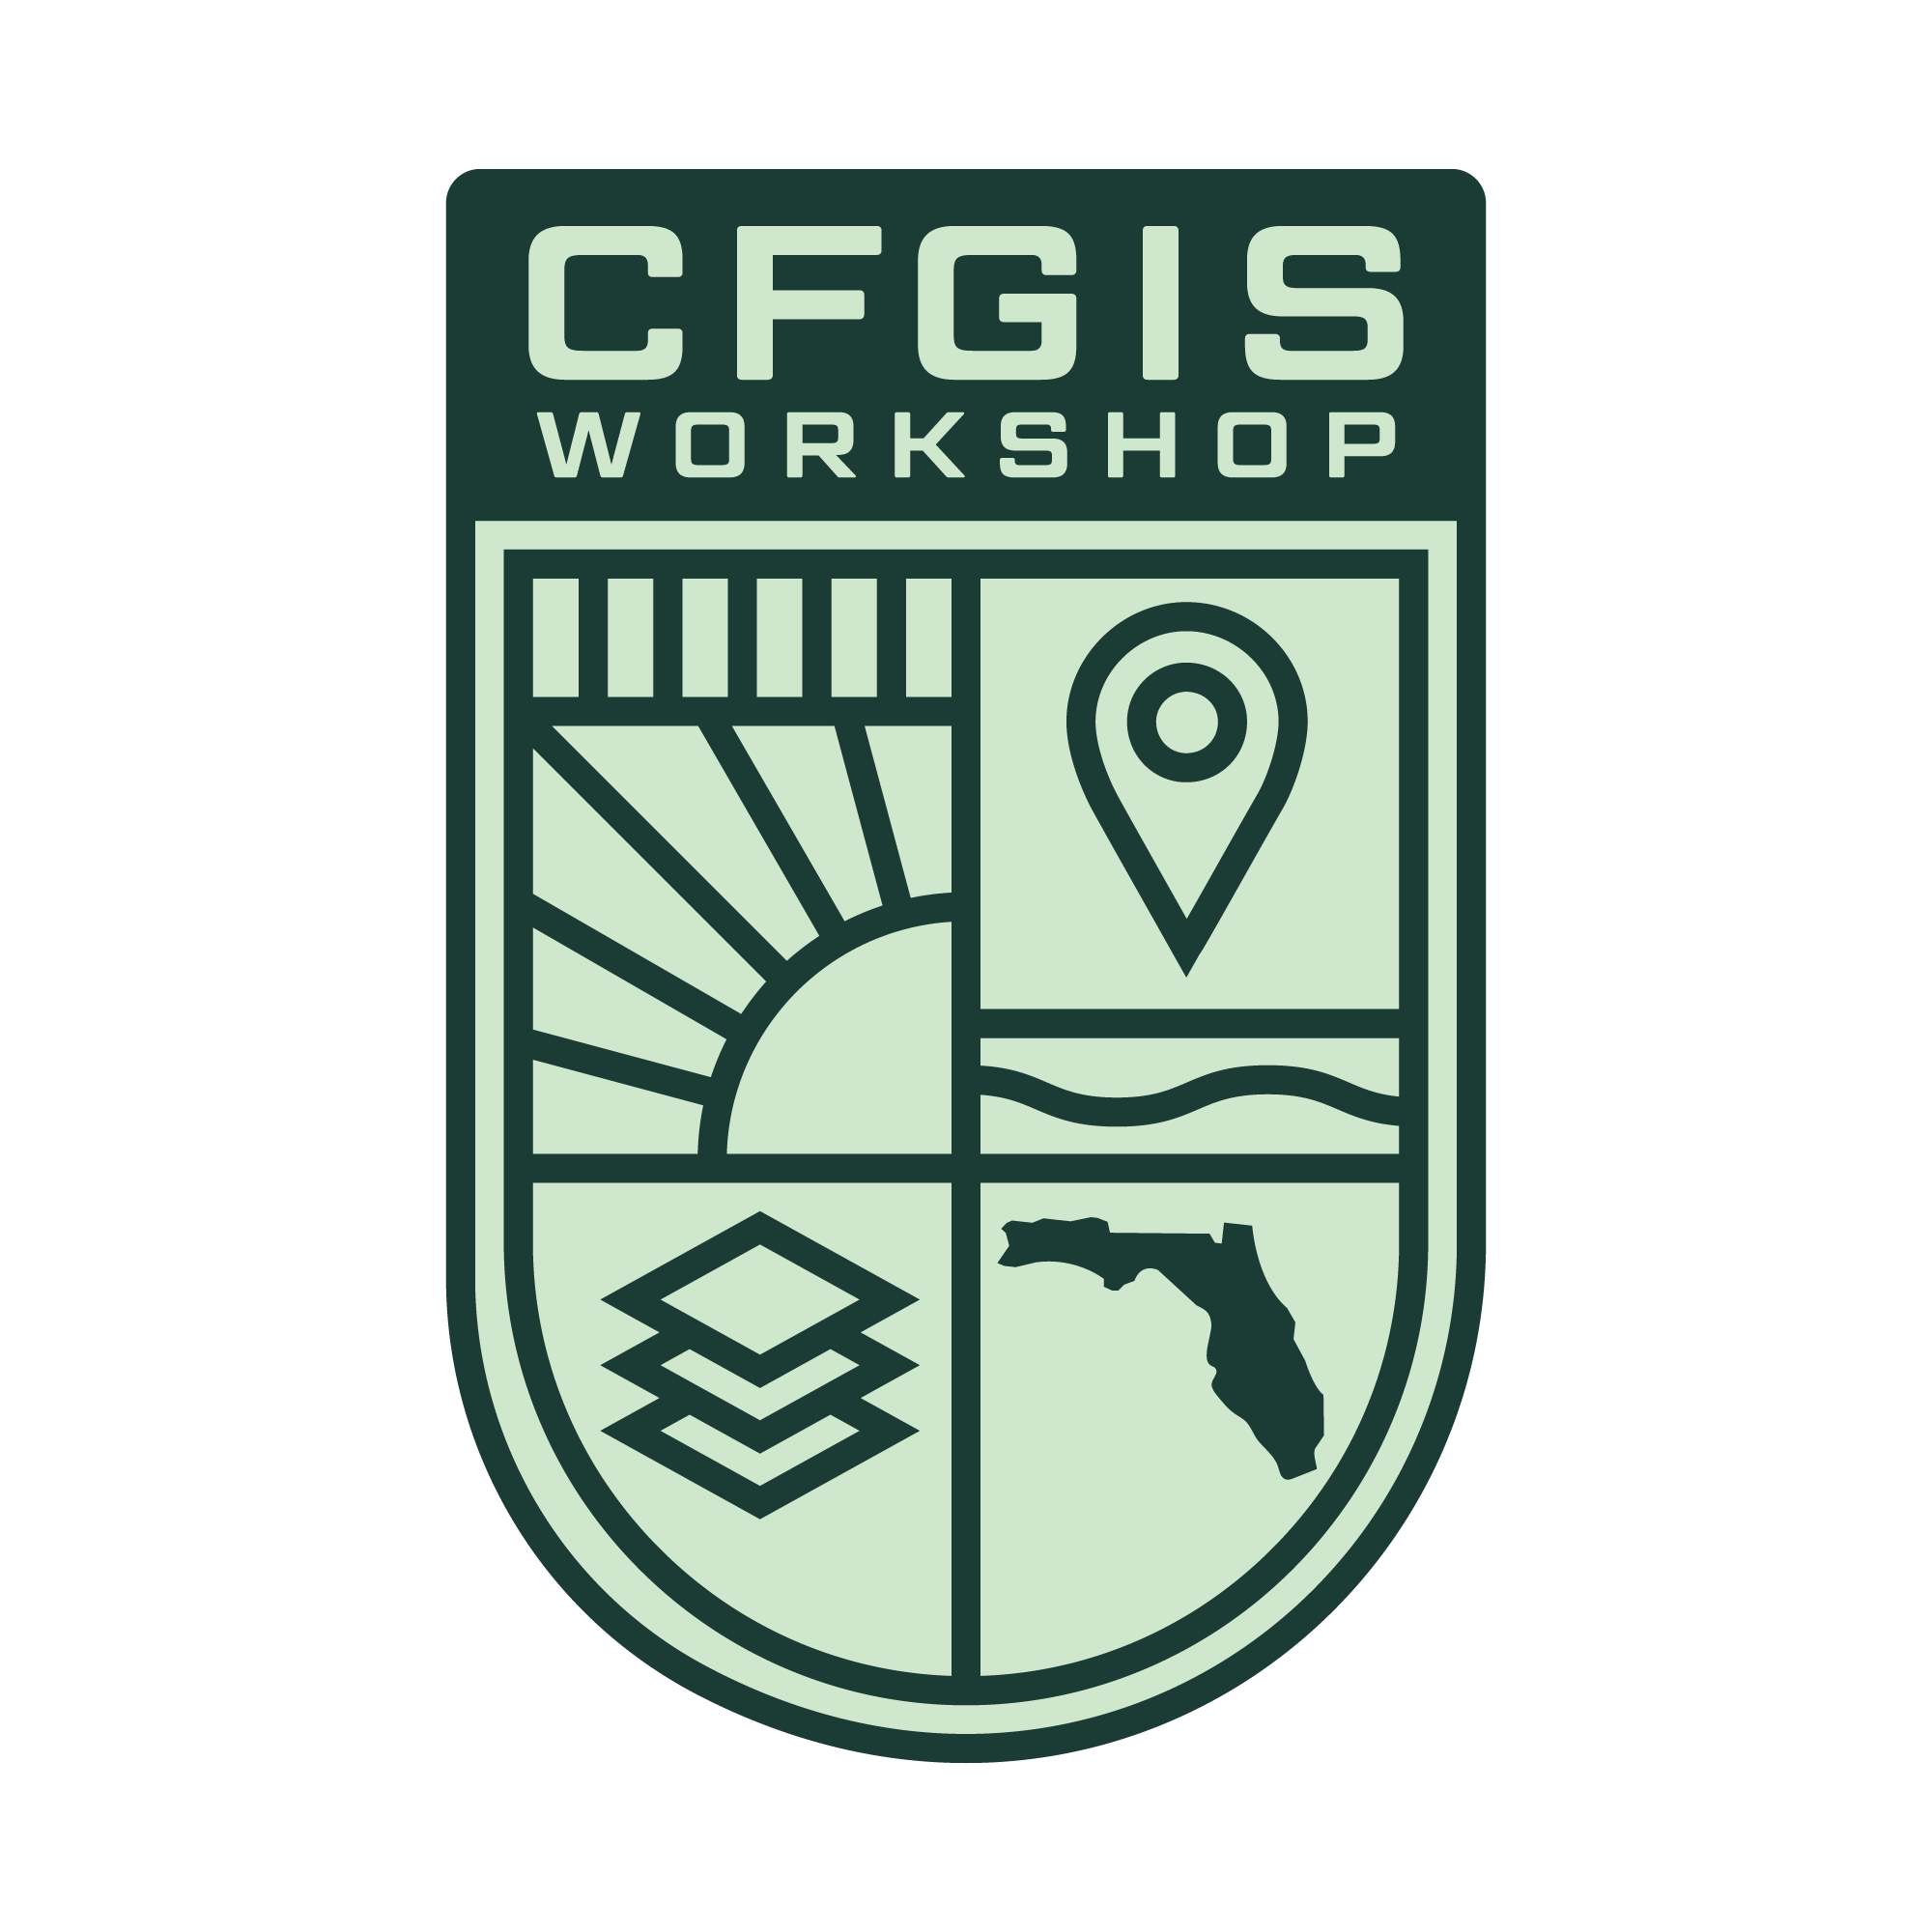 Central Florida GIS Workshop